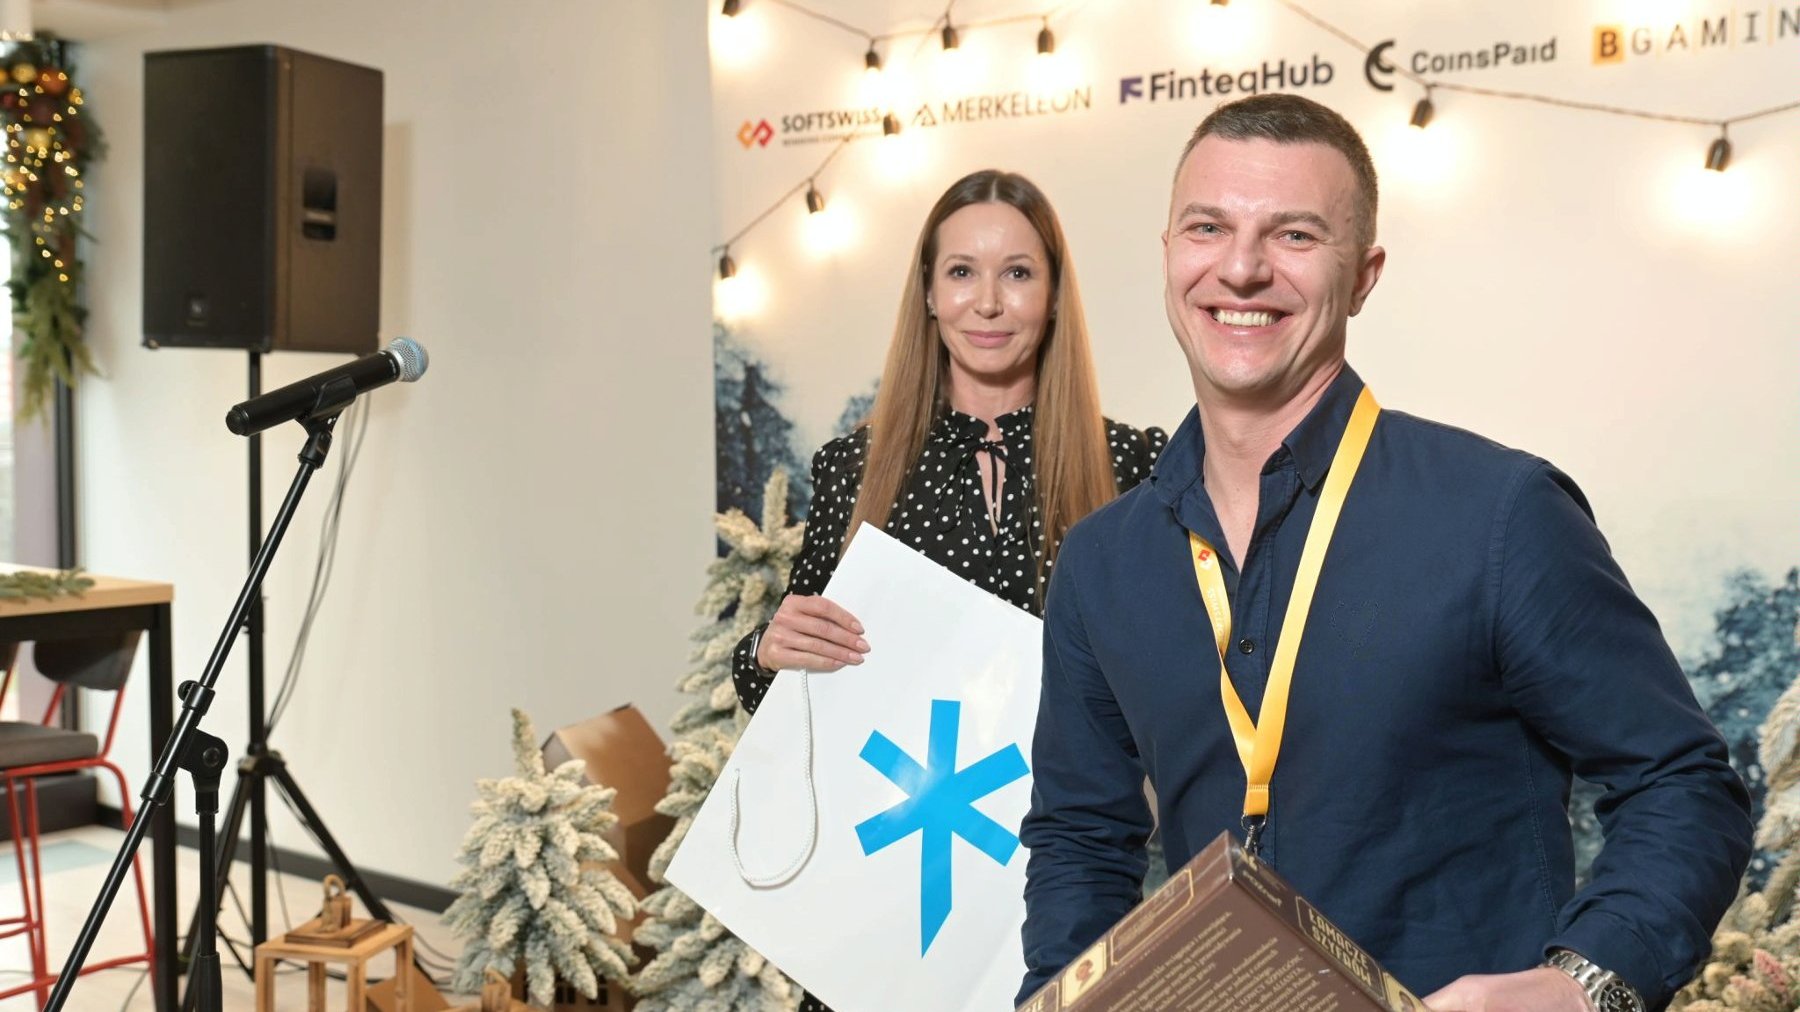 Zdjęcie przedstawia Ivana Montika, założyciela firmy SOFTSWISS. Mężczyzna jest uśmiechnięty, trzyma w ręku grę planszową "Łamacze szyfrów". Za nim stoi dyrektor Biura Obsługi Inwestorów Katja Lożina. W tle znajduje się świąteczna ścianka z logotypami firm.